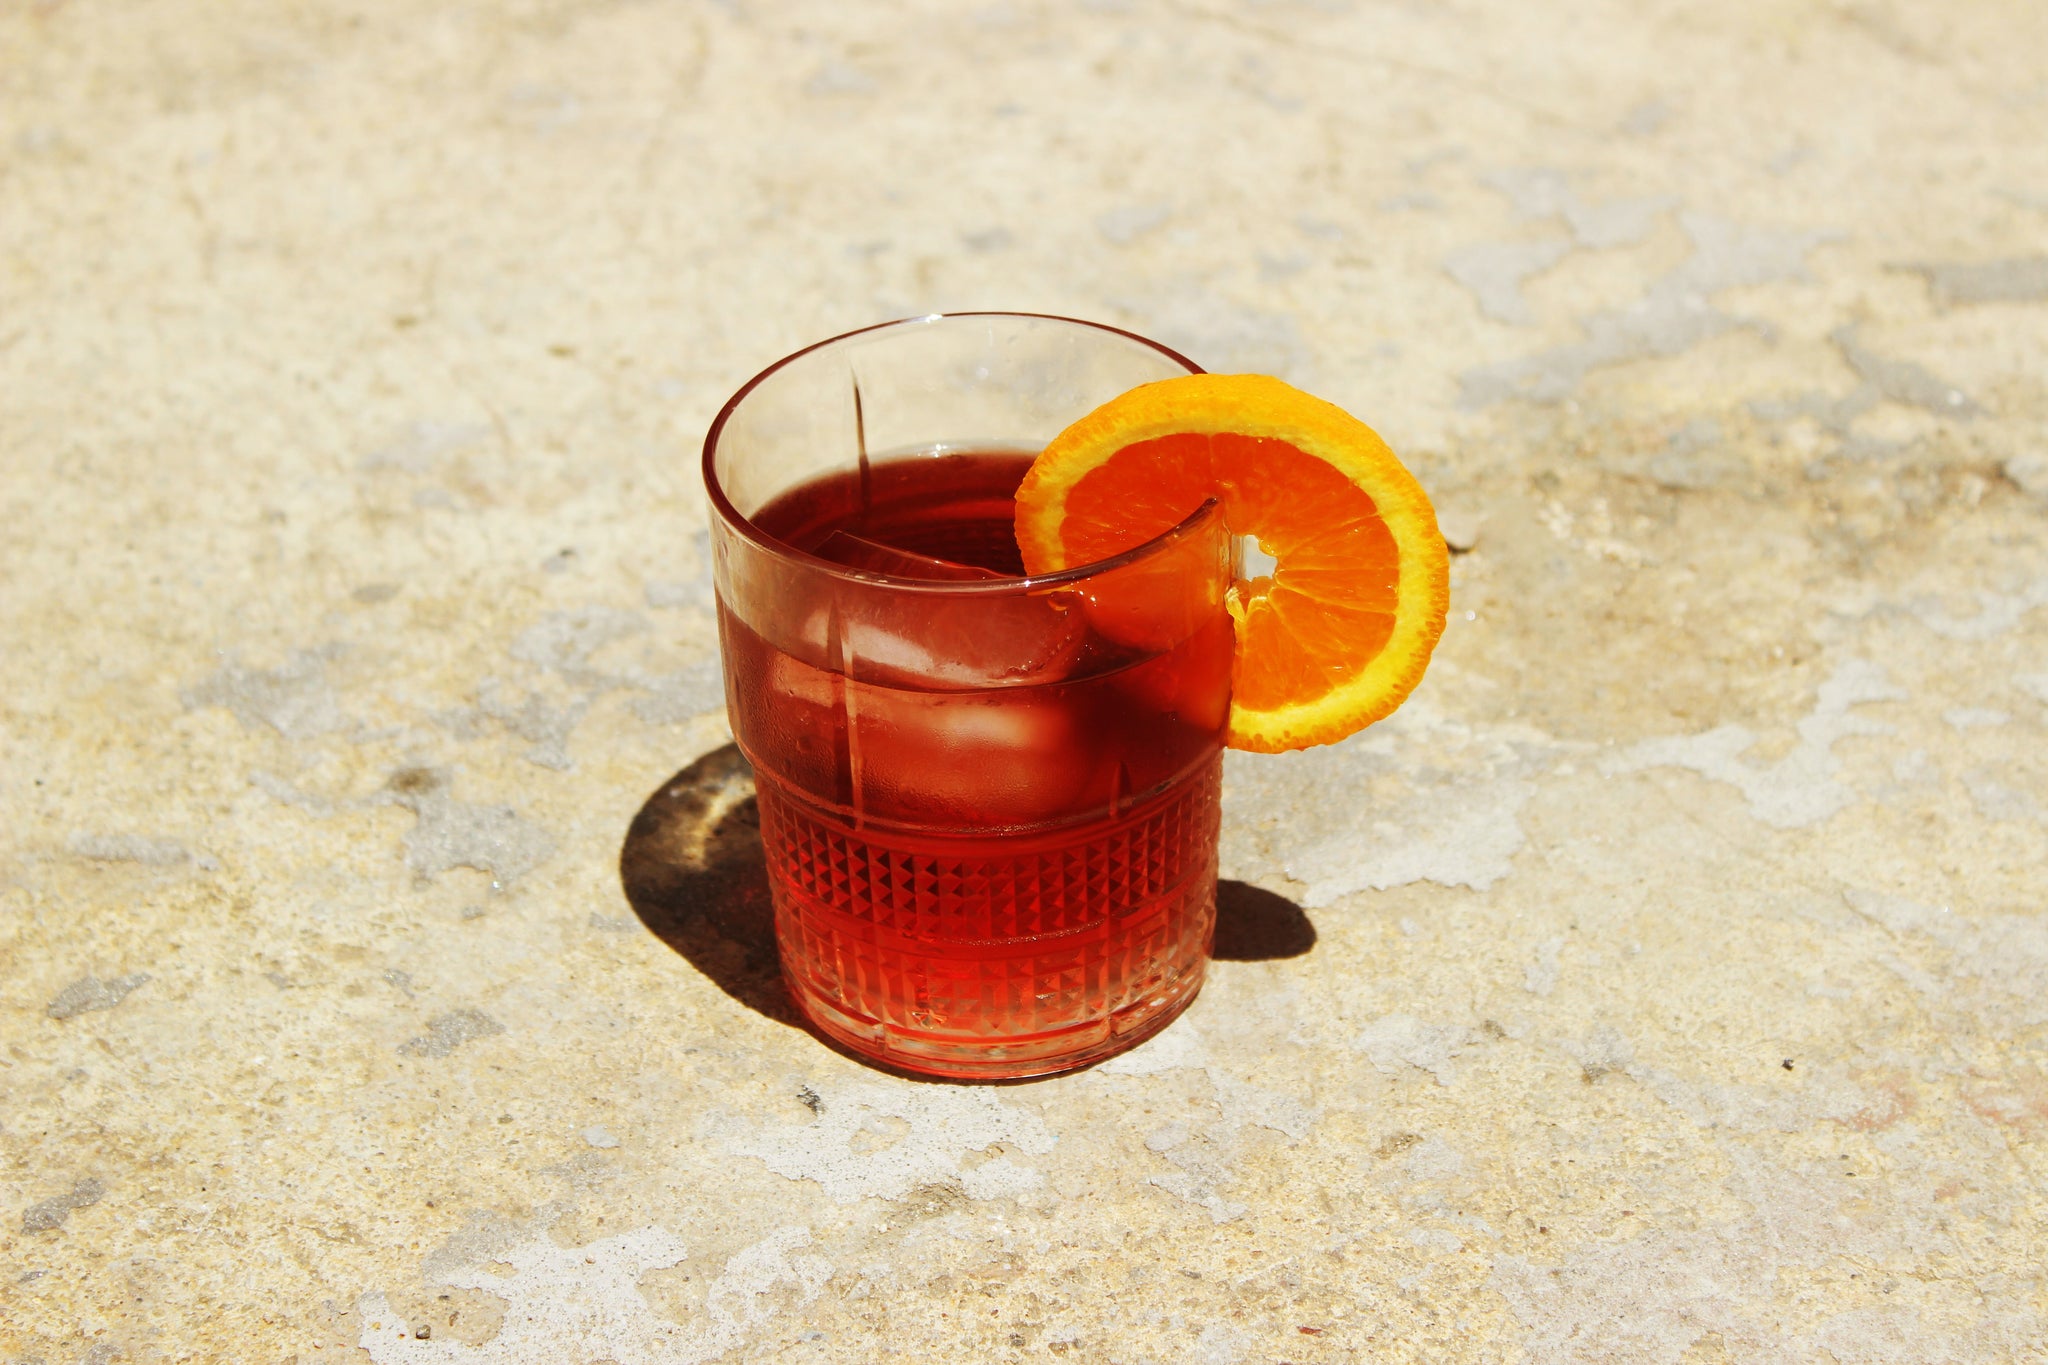 Come tagliare l'arancia per i cocktail? garnish perfette per i tuoi aperitivi